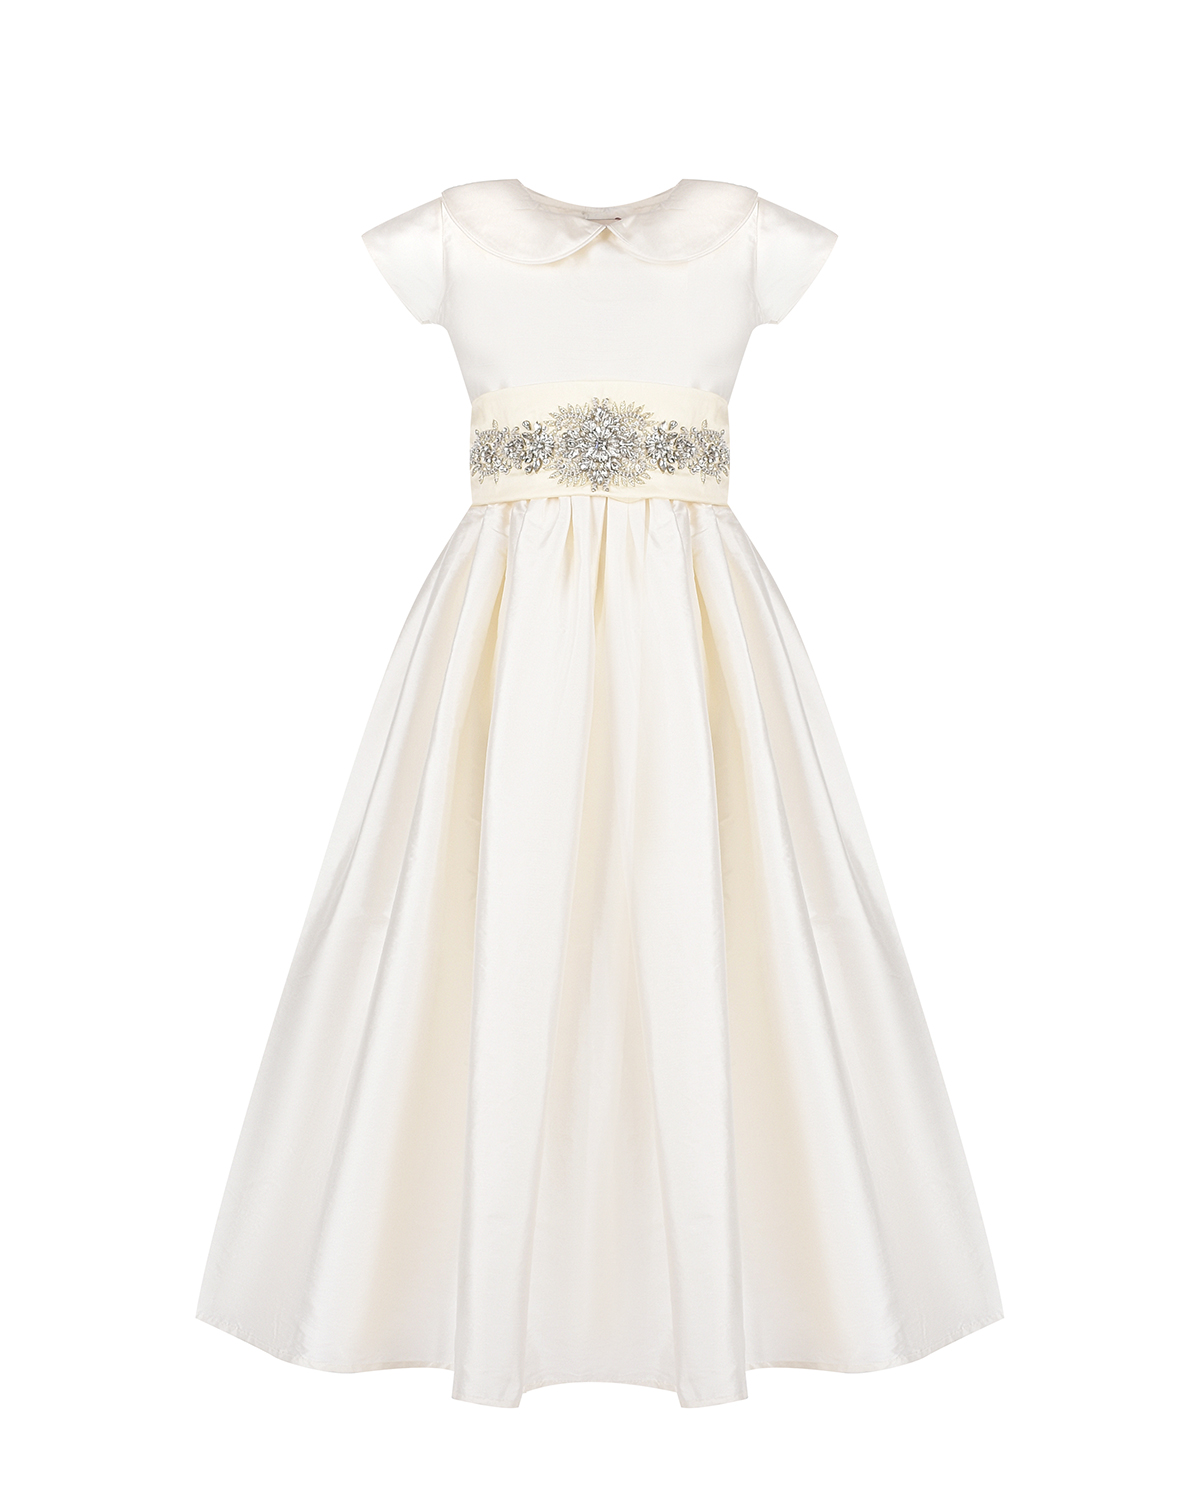 Платье кремового цвета с вышивкой стразами, размер 104 - фото 1